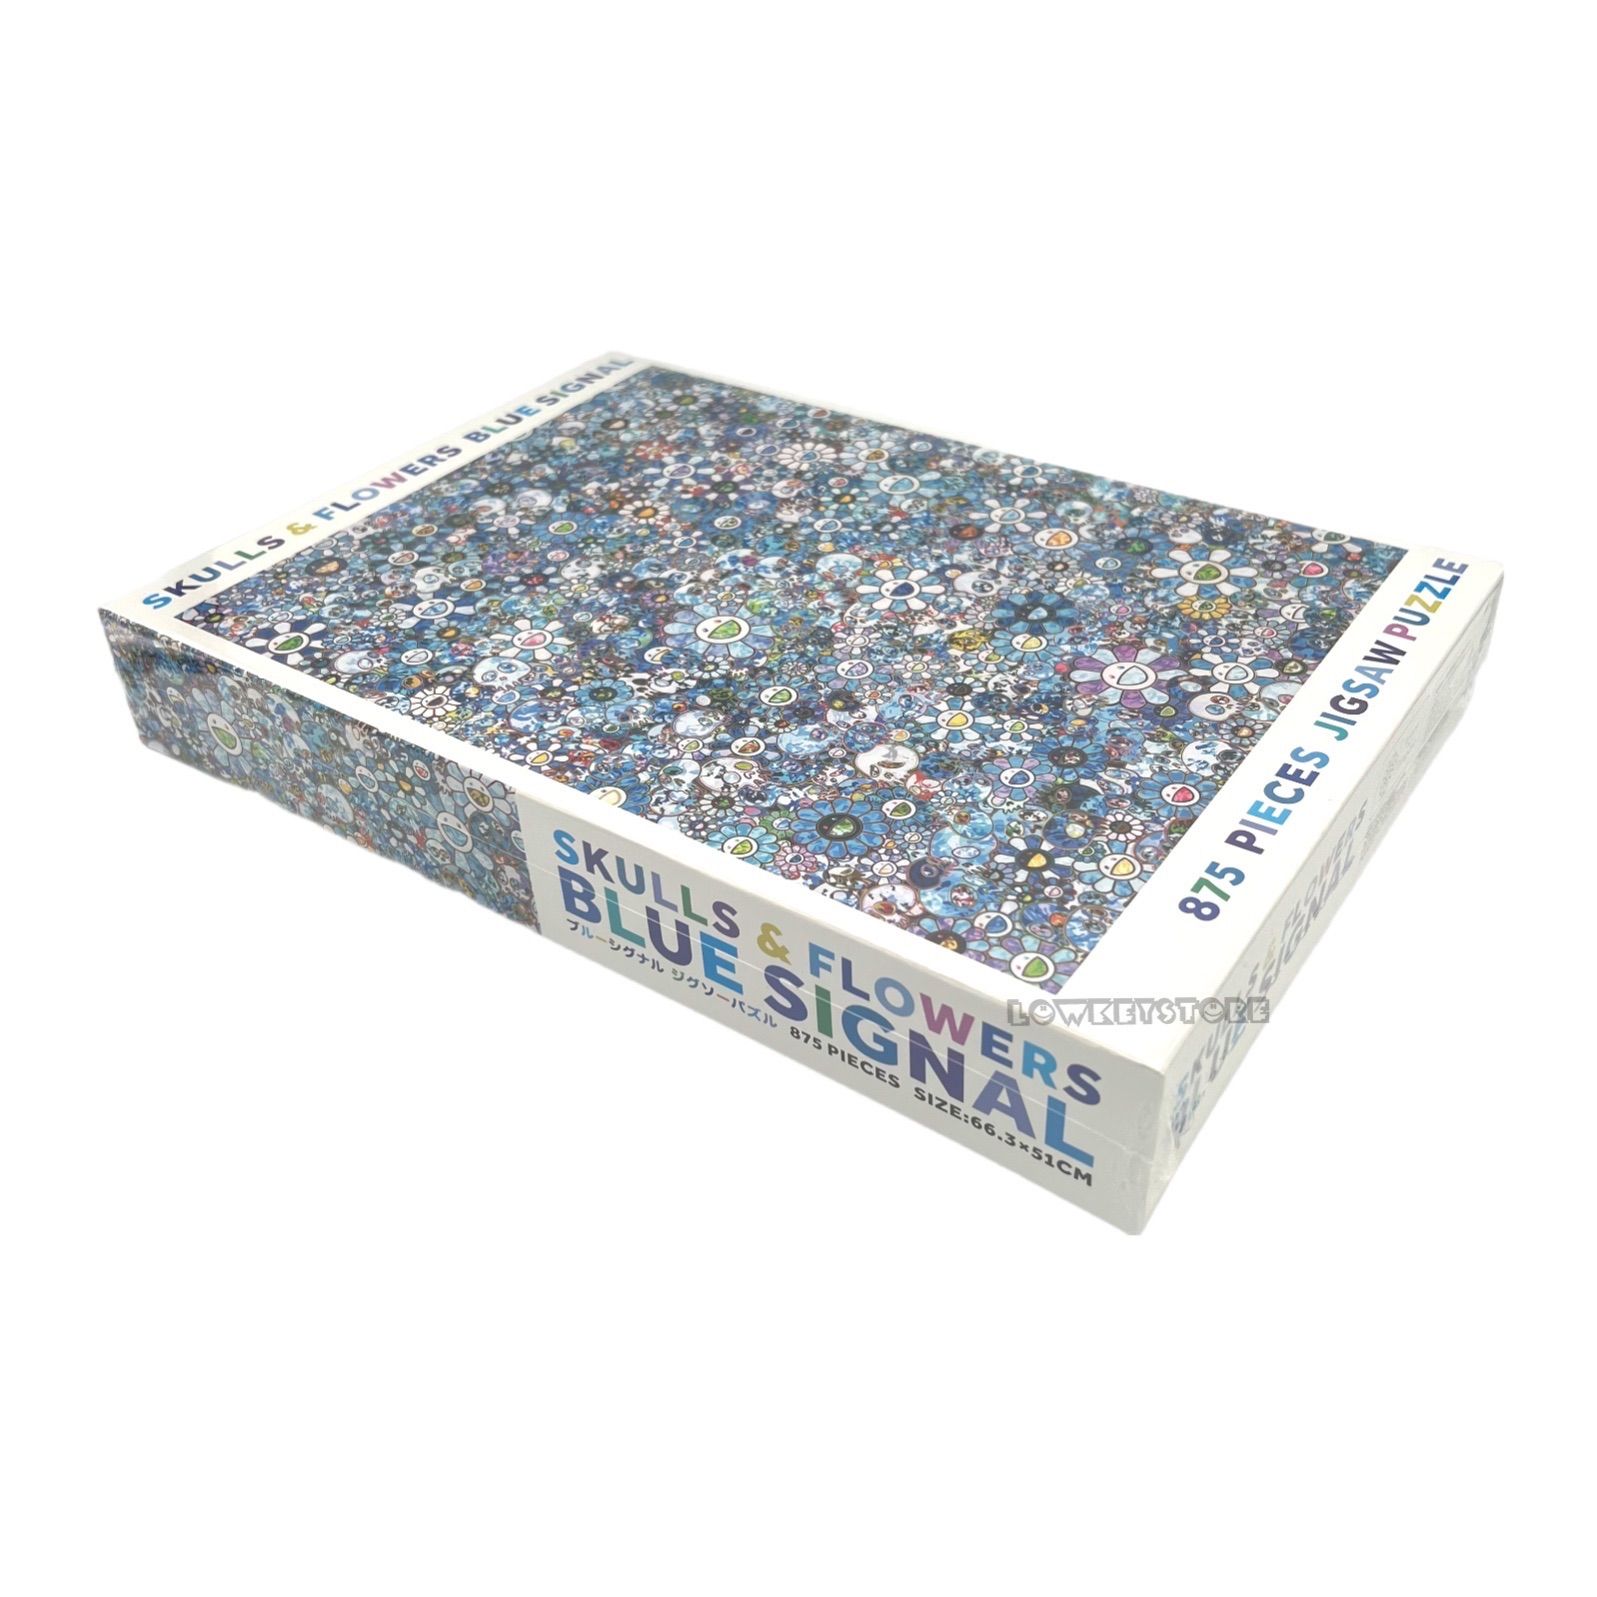 村上隆 パズル SKULLS & FLOWERS BLUE SIGNAL - LOWKEY STORE - メルカリ